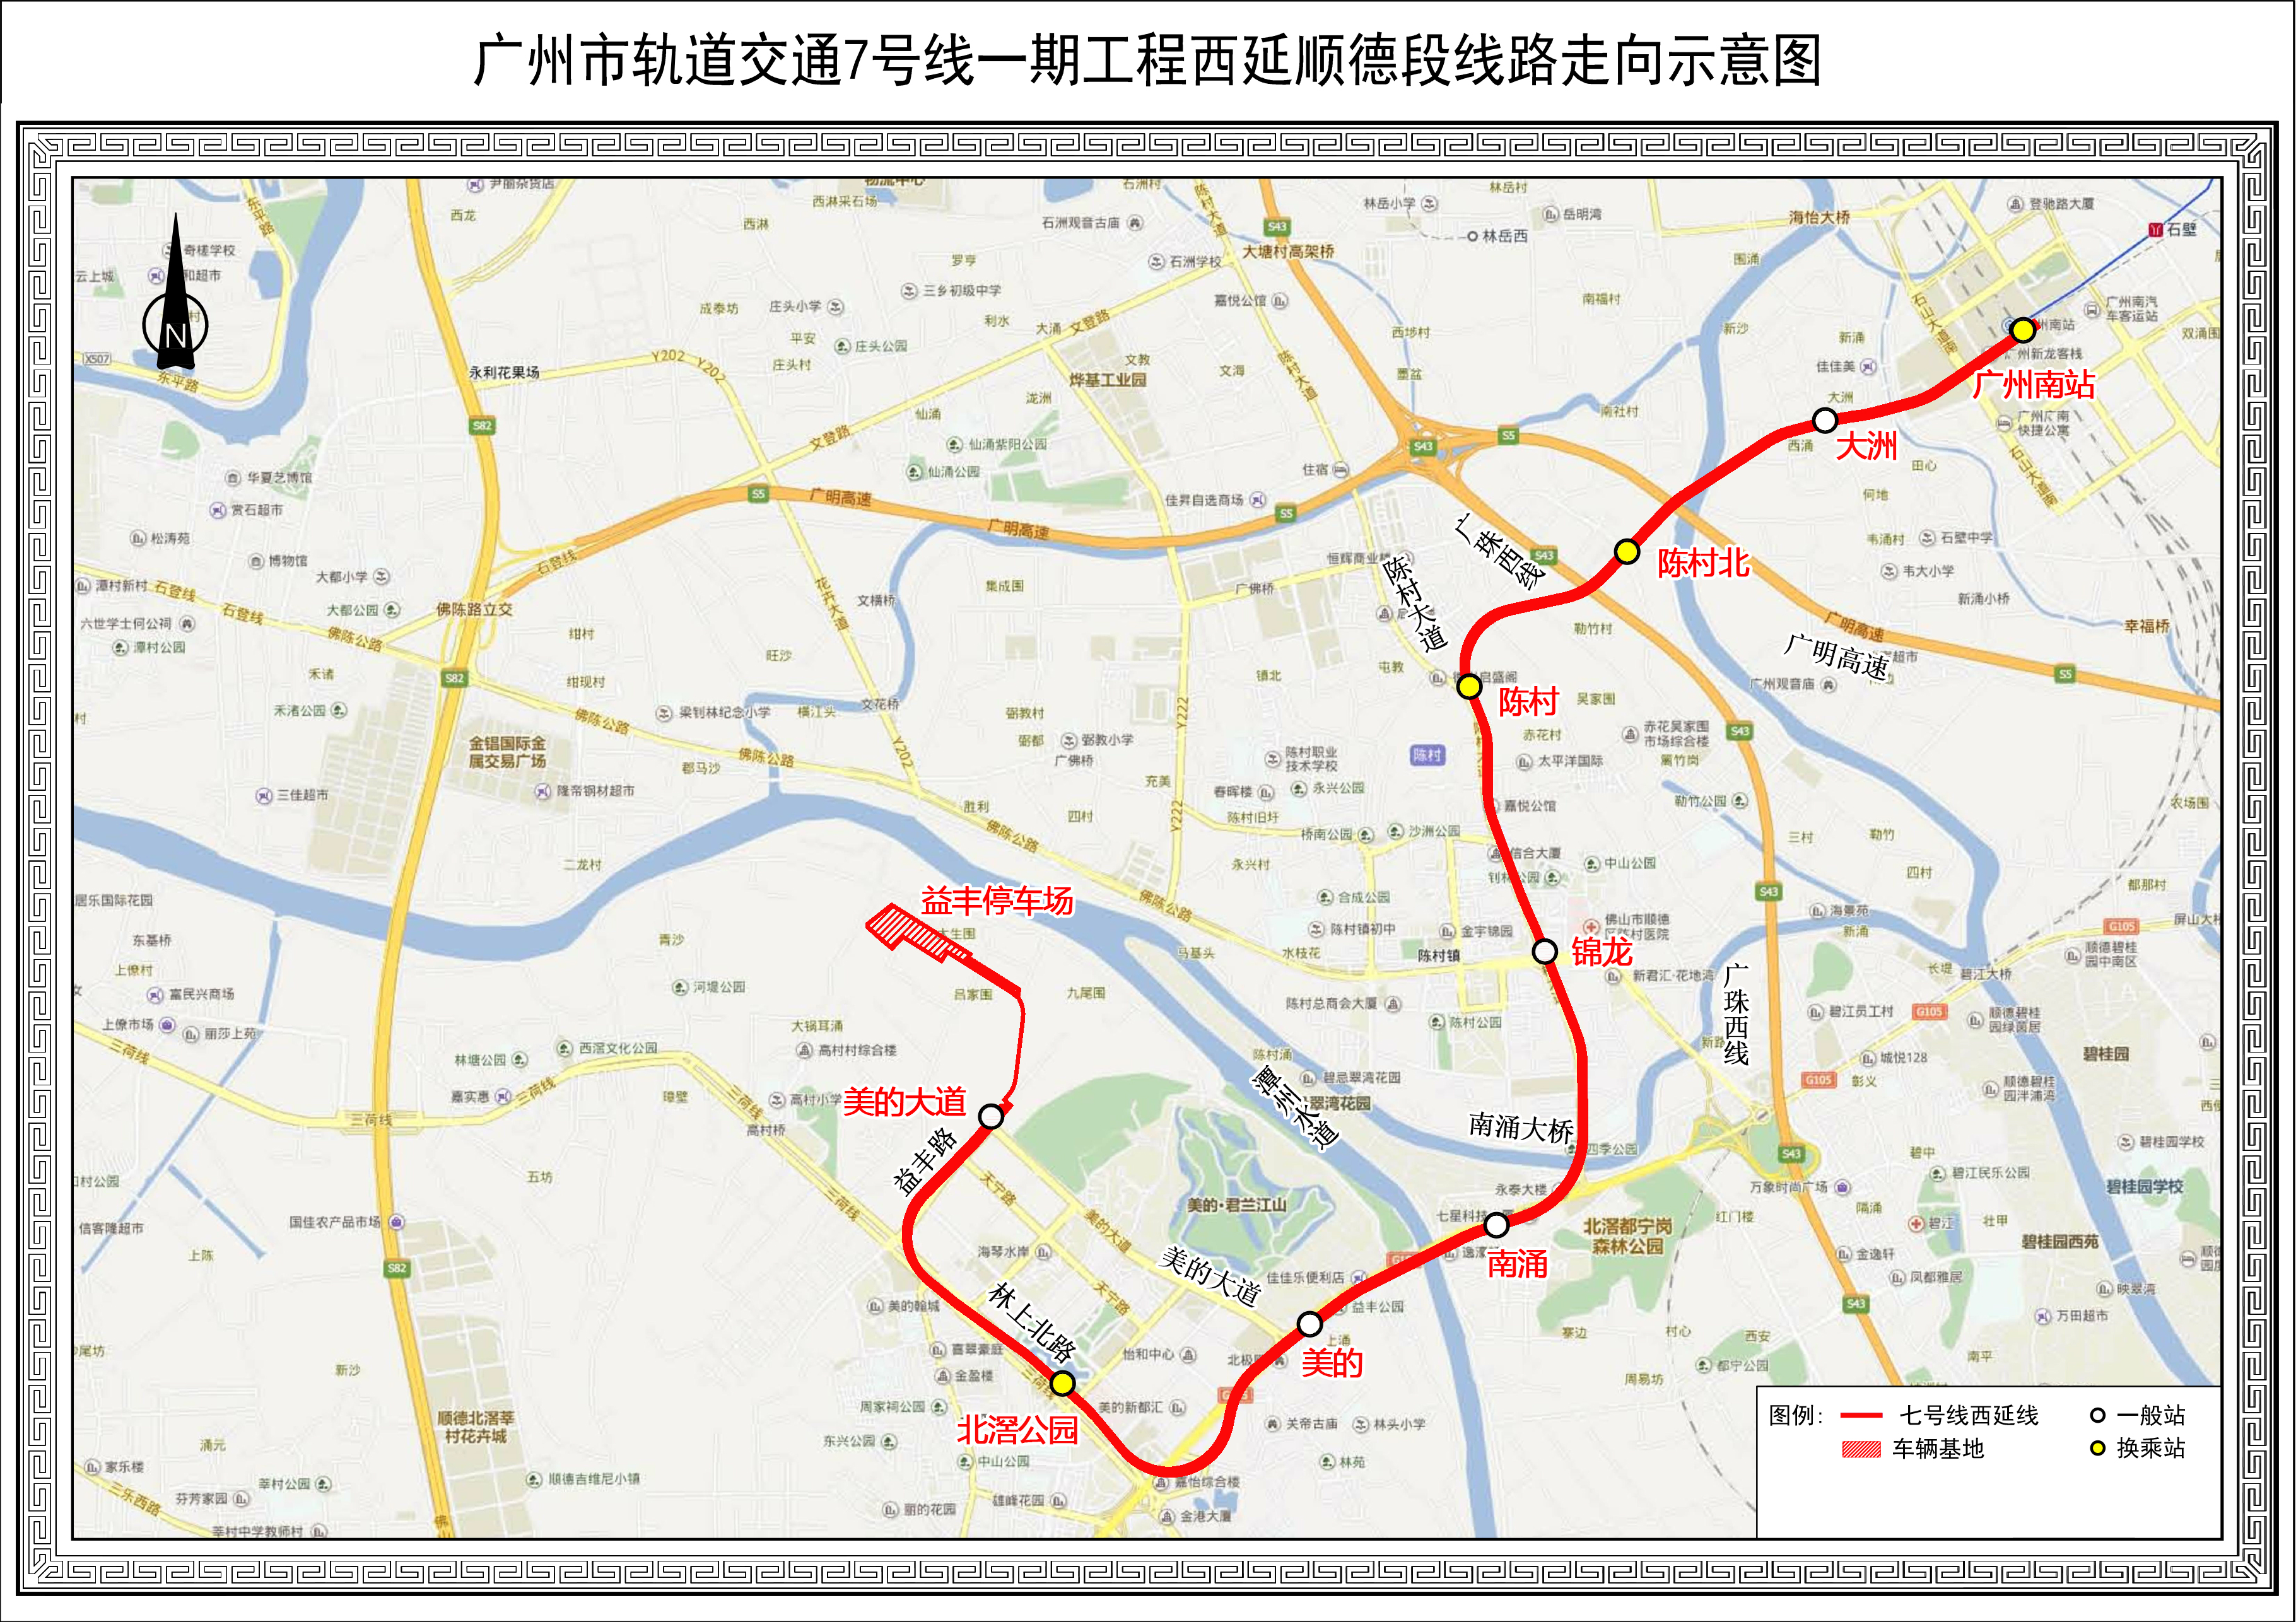 广州地铁7号线西延顺德段项目开通运营广佛全域同城化迈上新台阶